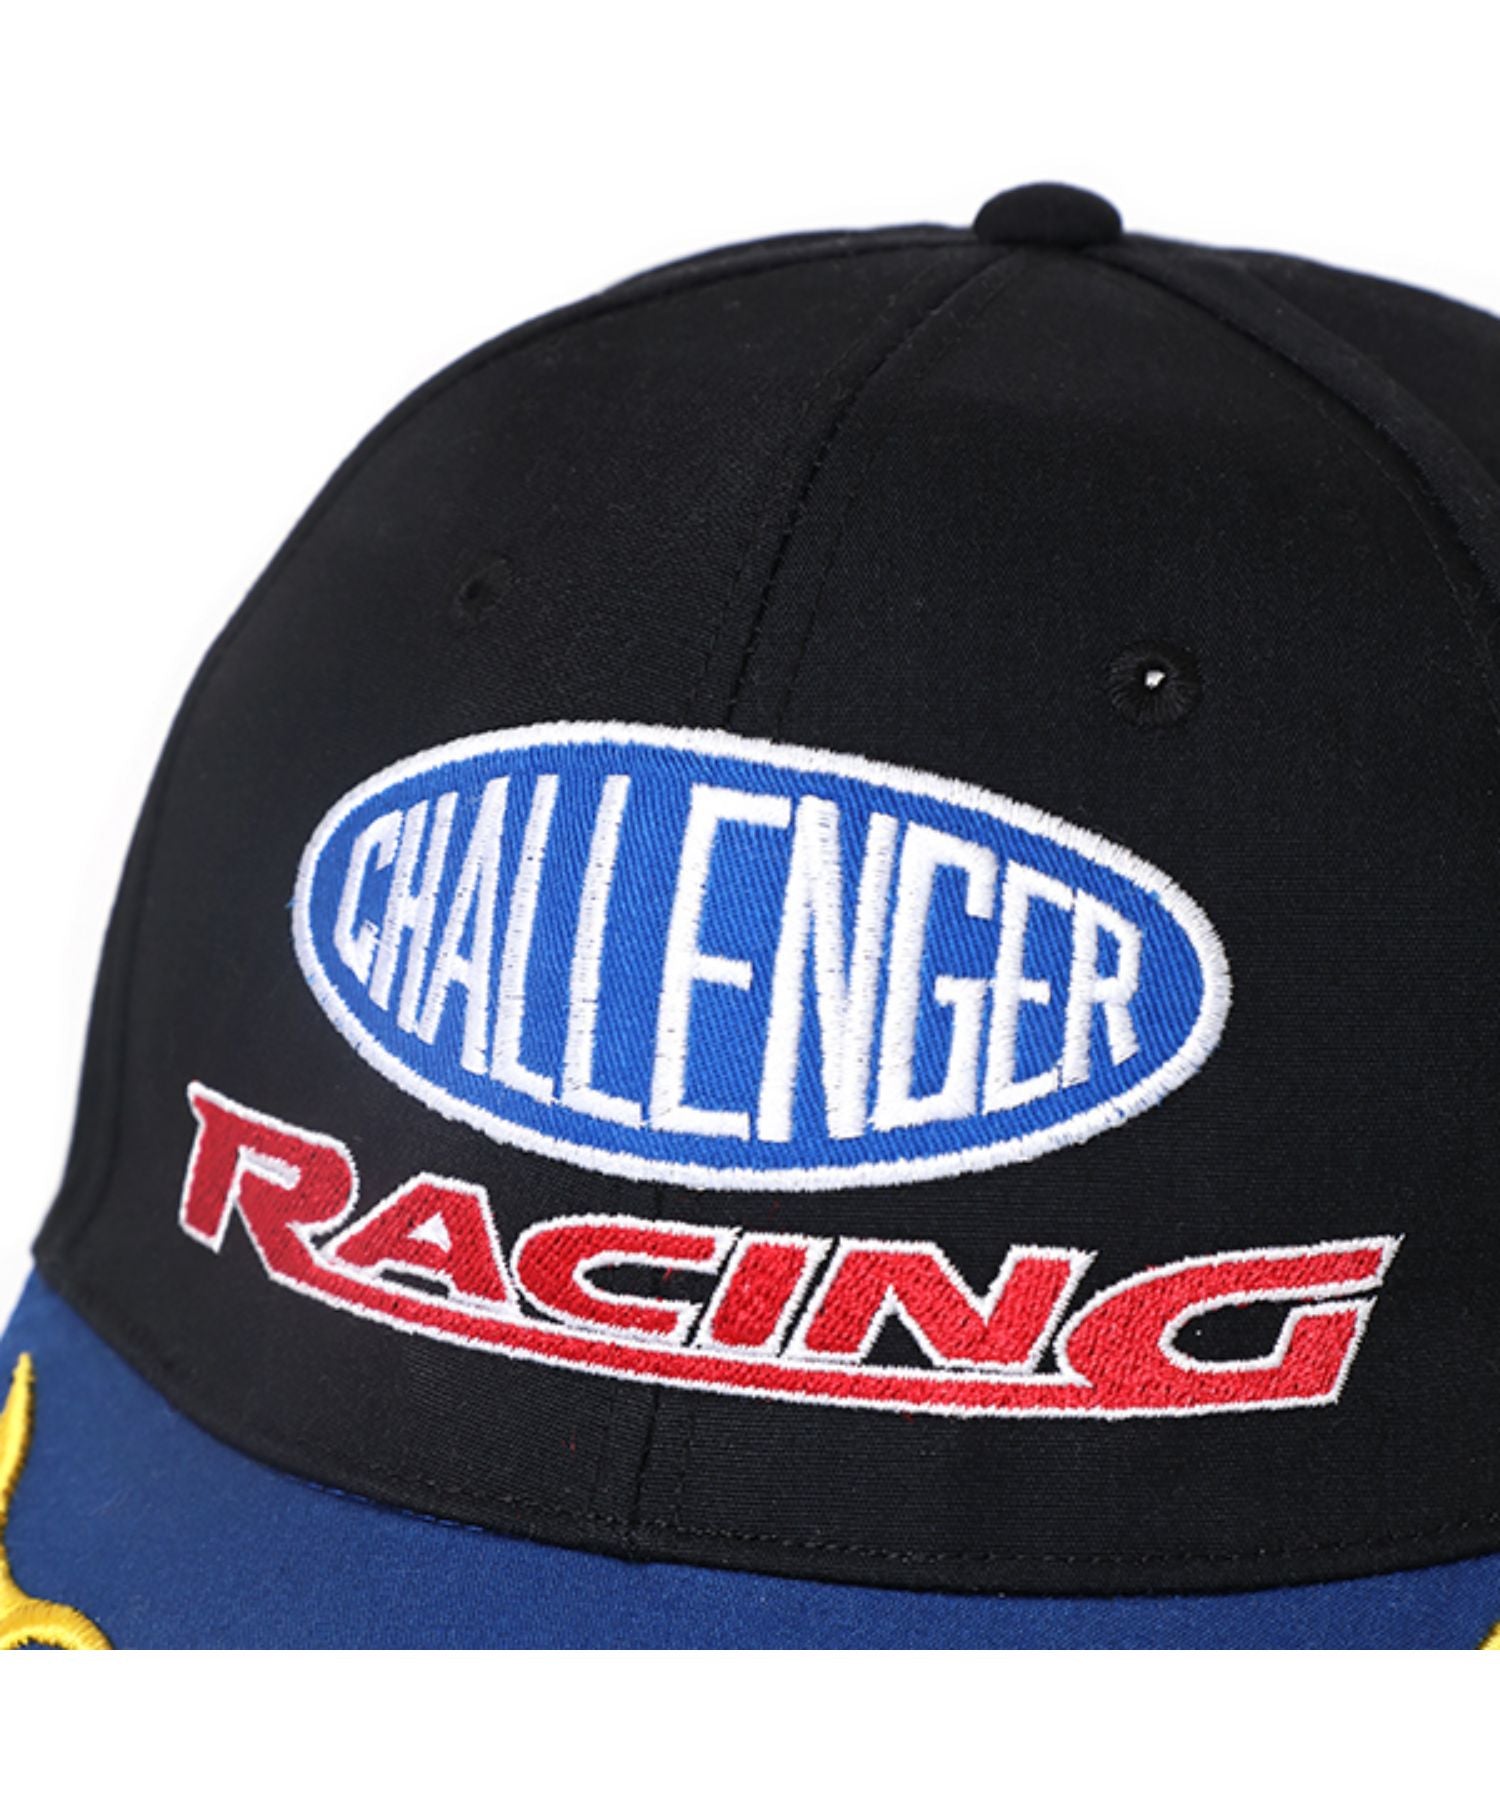 Racing Cap - CHALLENGER (チャレンジャー) - cap (キャップ) | FIGURE 